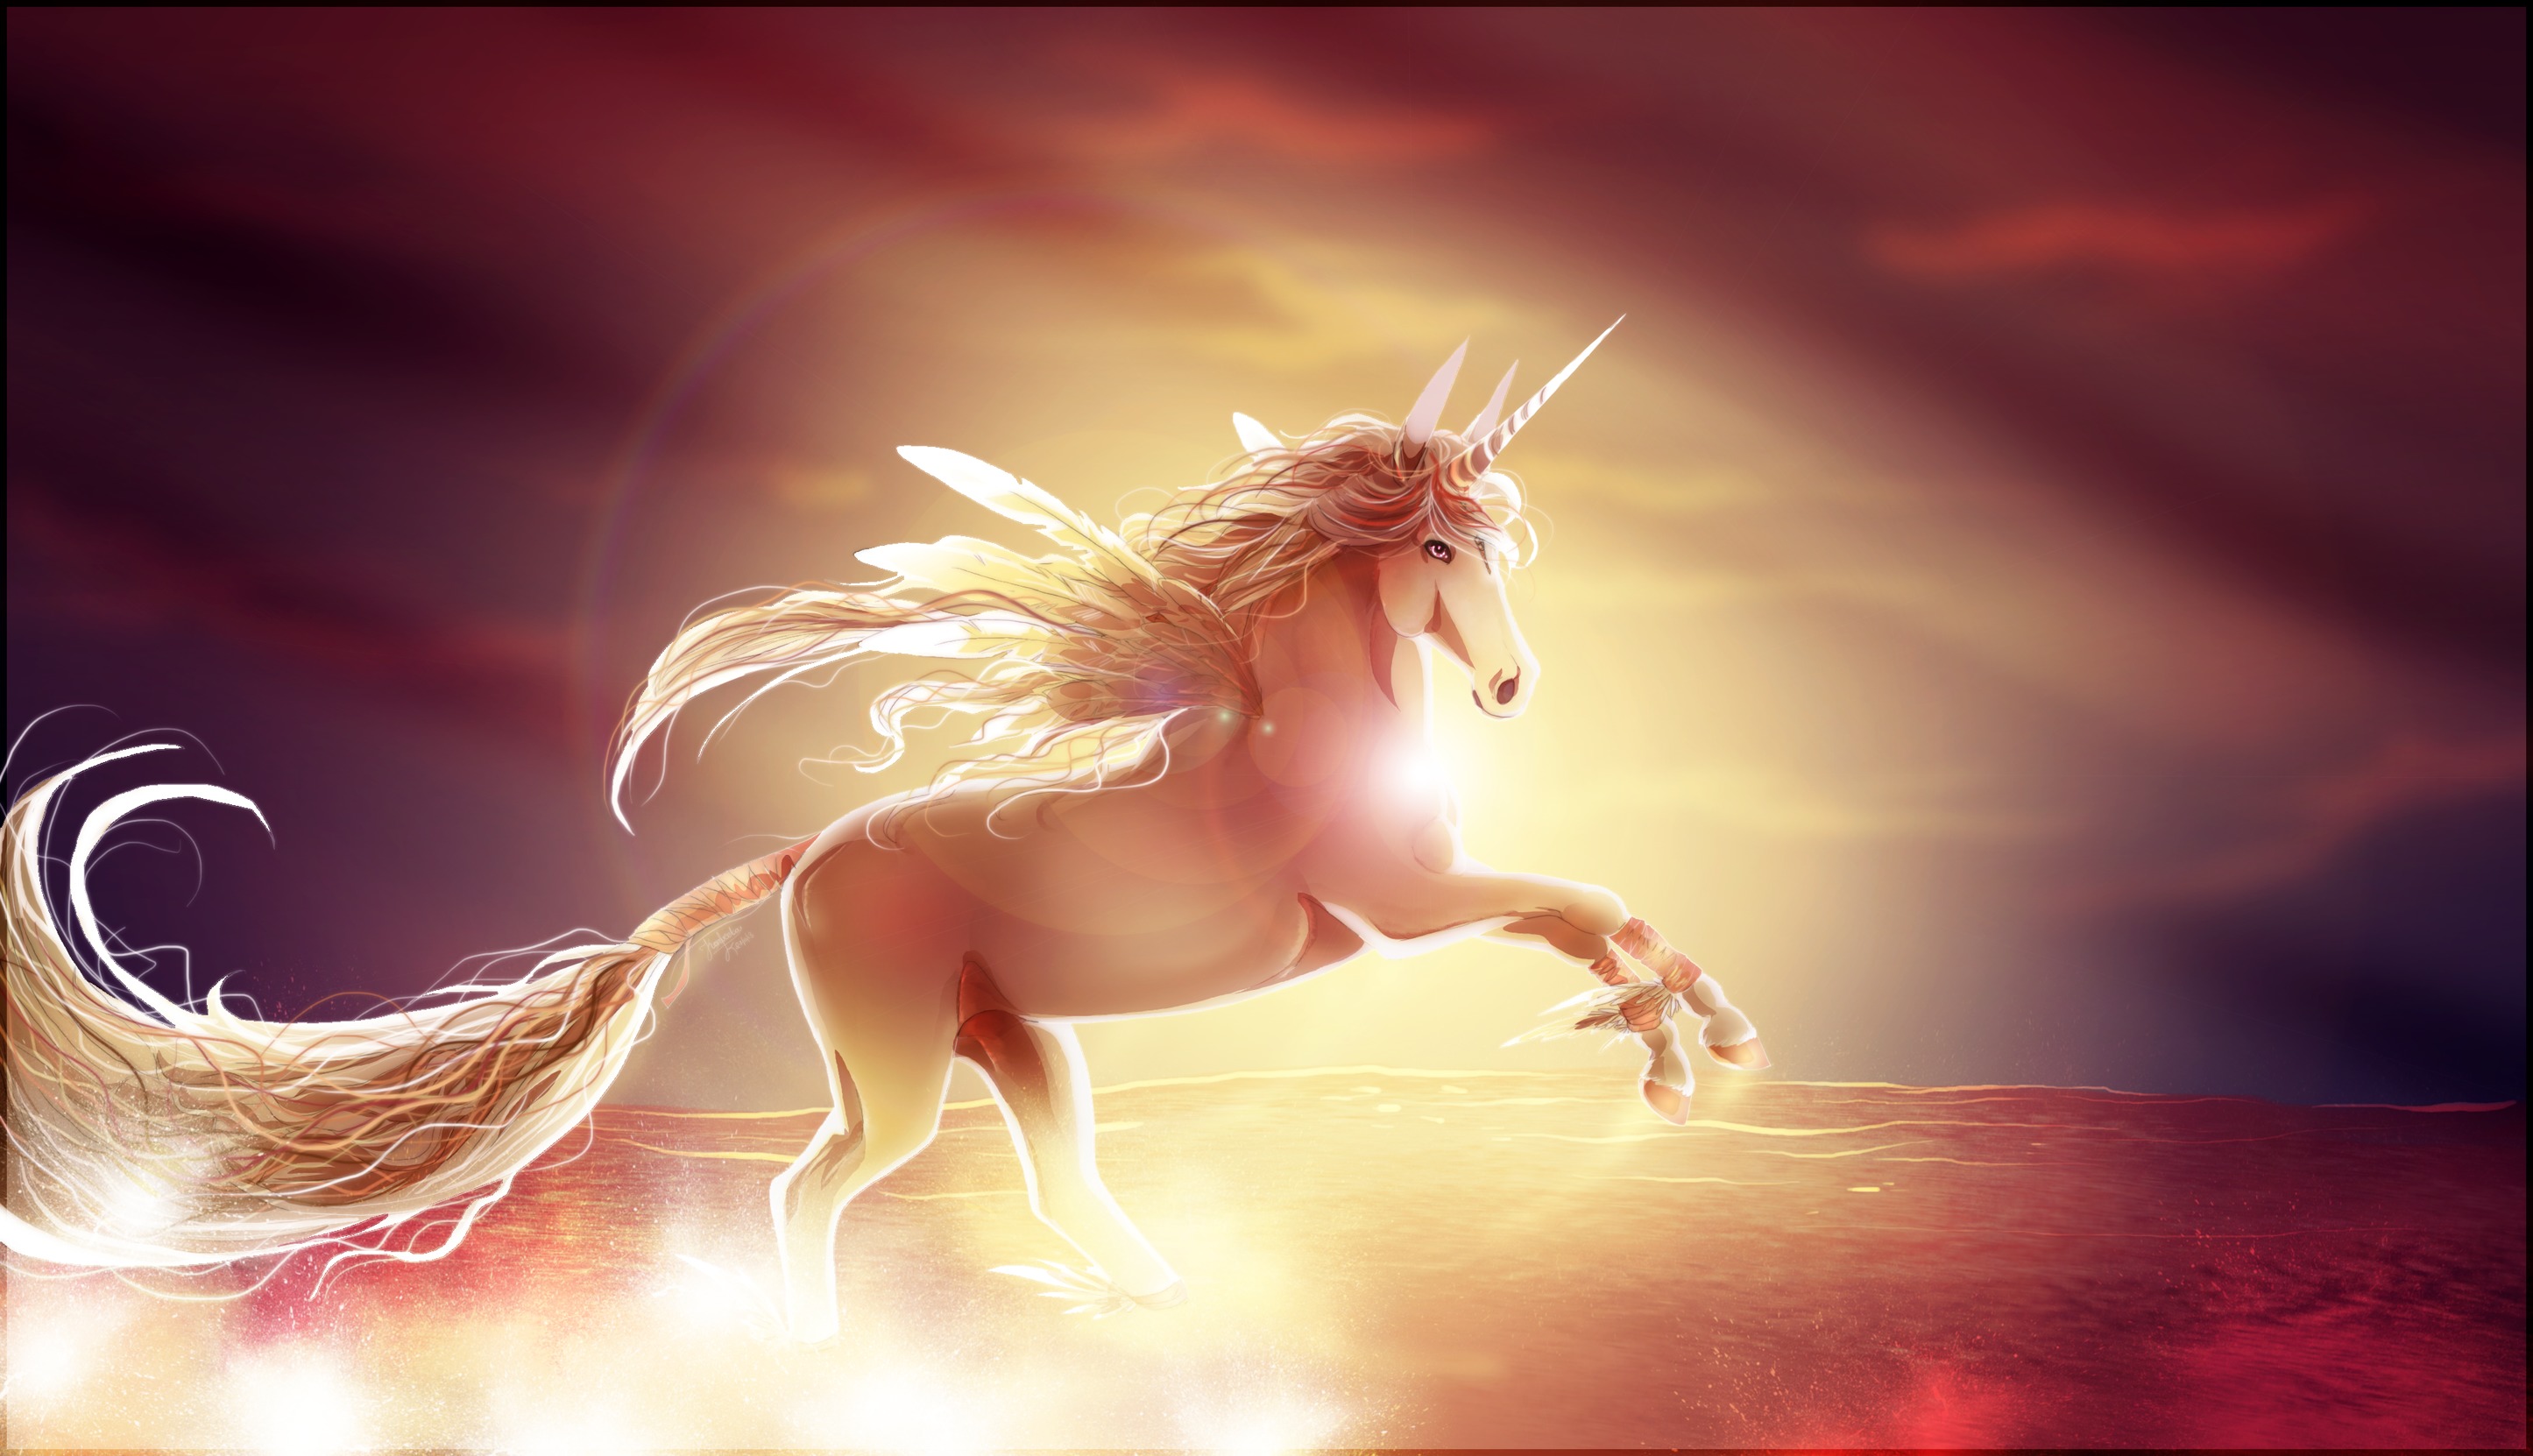 fondos de pantalla de unicornio gratis,personaje de ficción,cg artwork,criatura mítica,unicornio,cielo